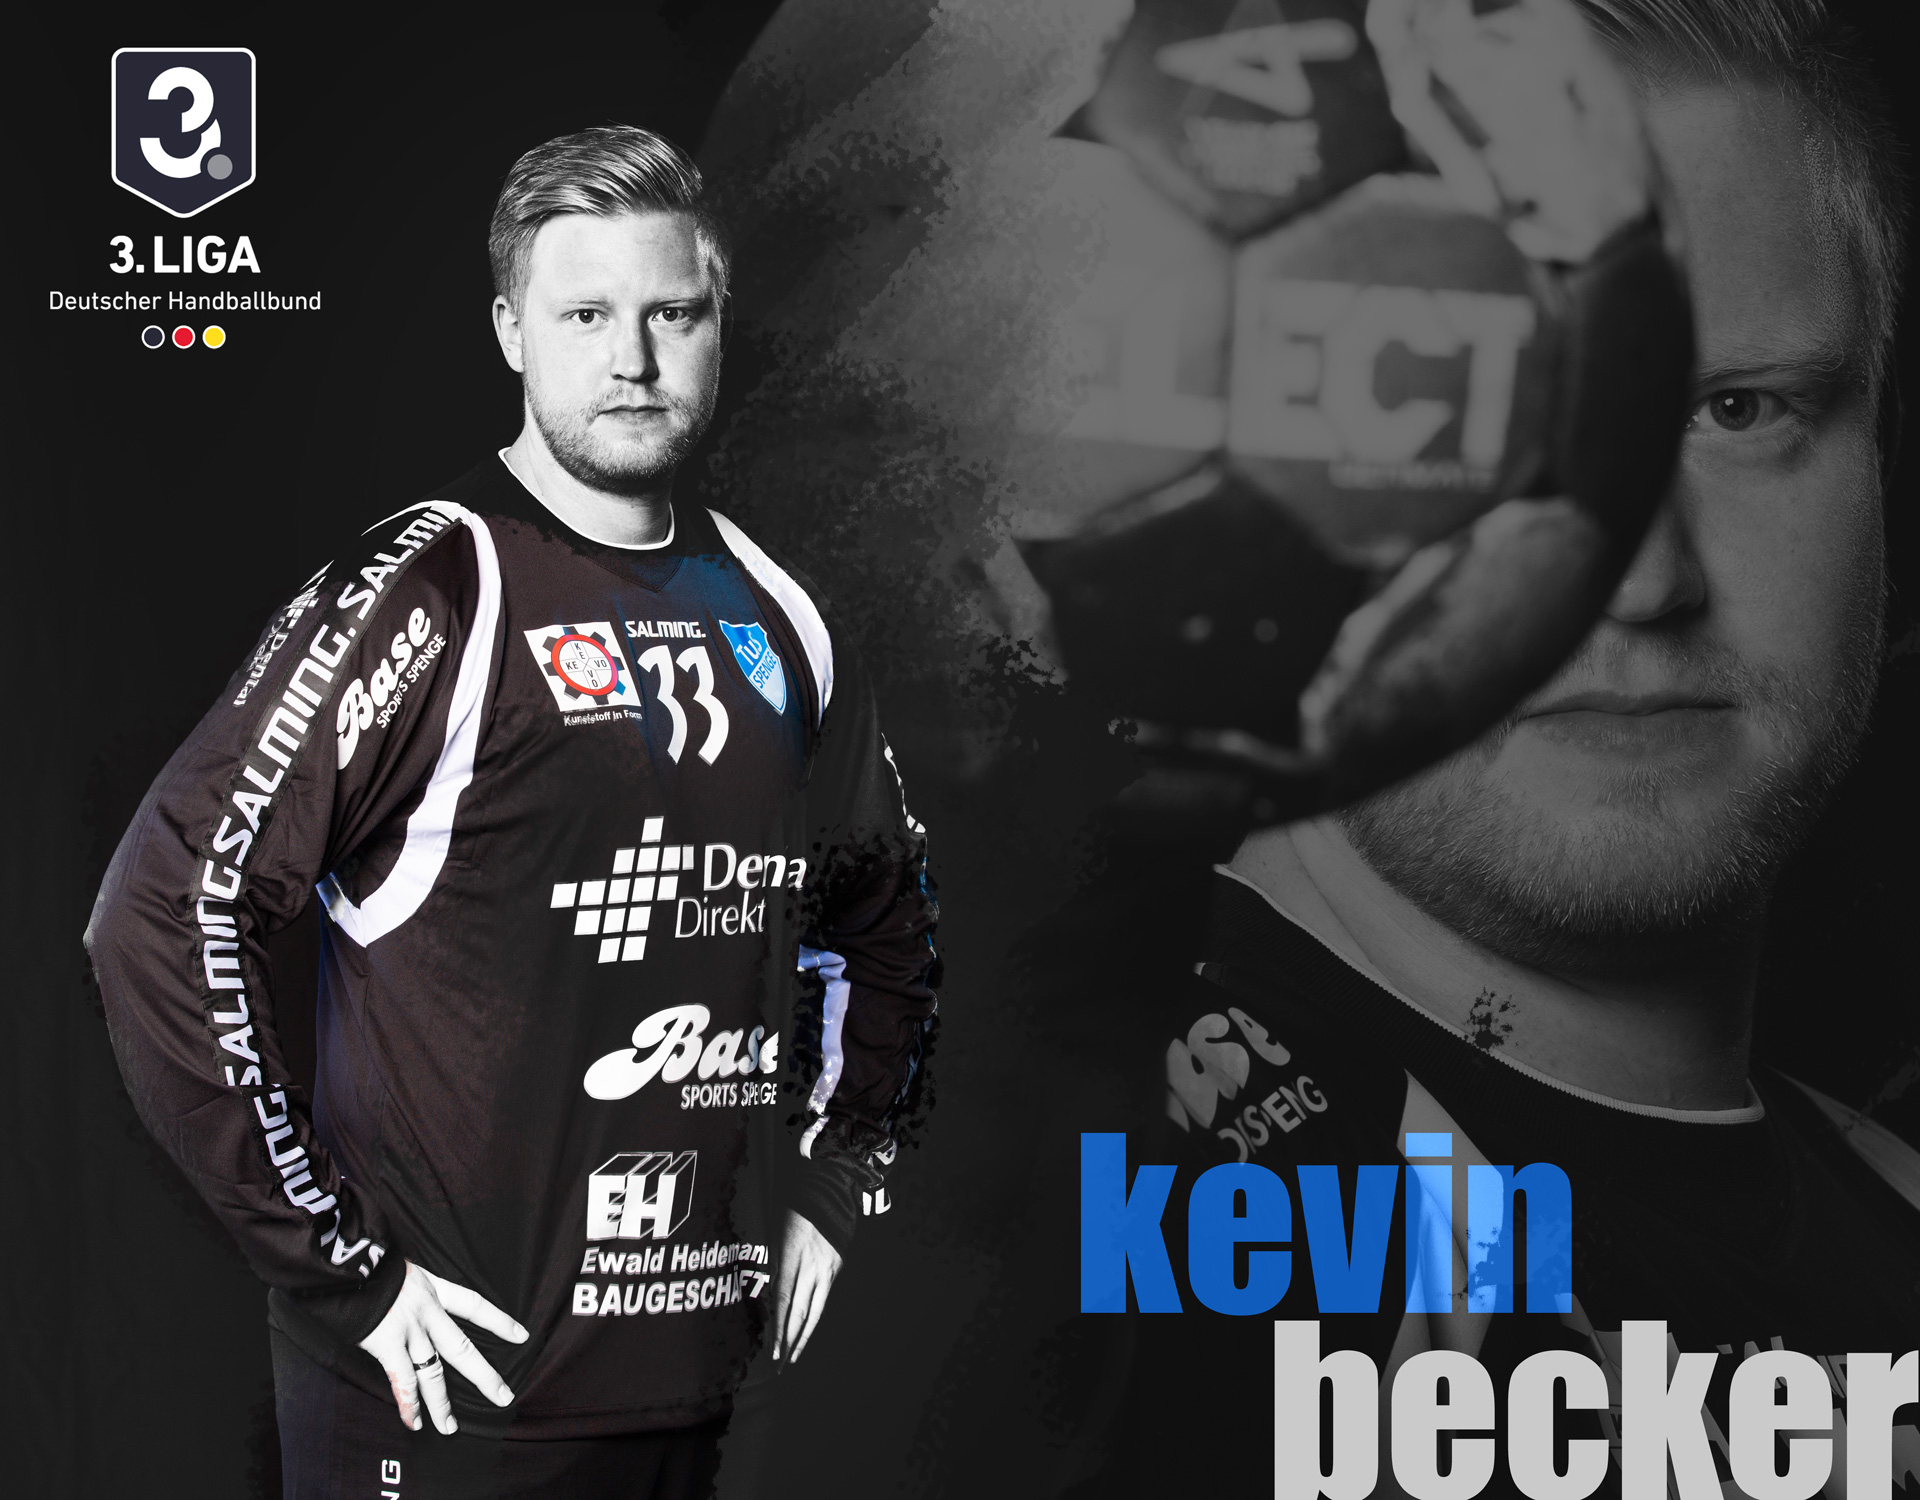 Kevin Becker